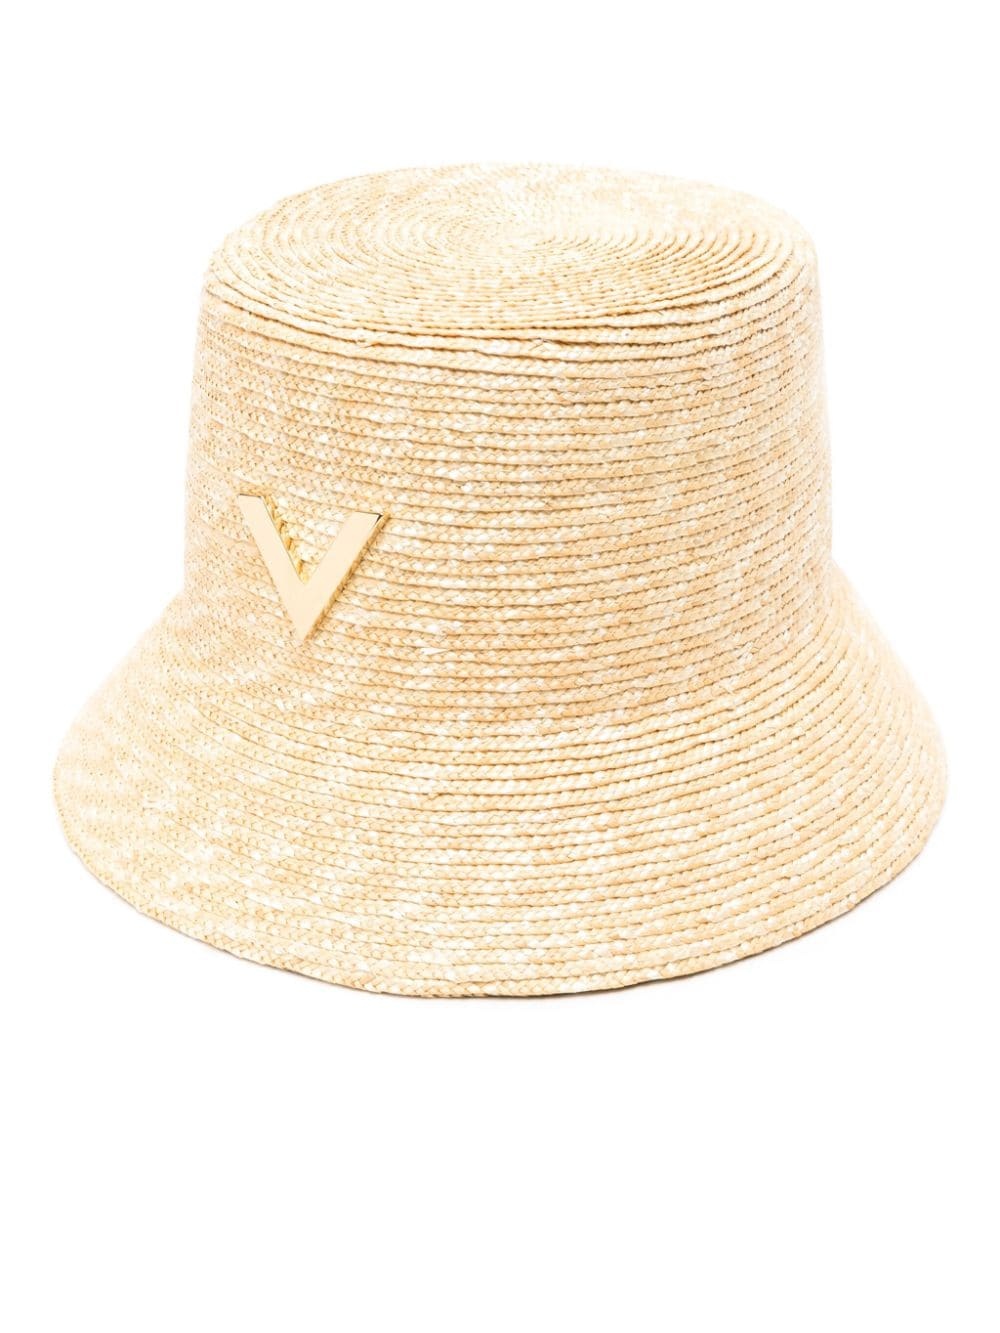 VLogo raffia bucket hat - 1